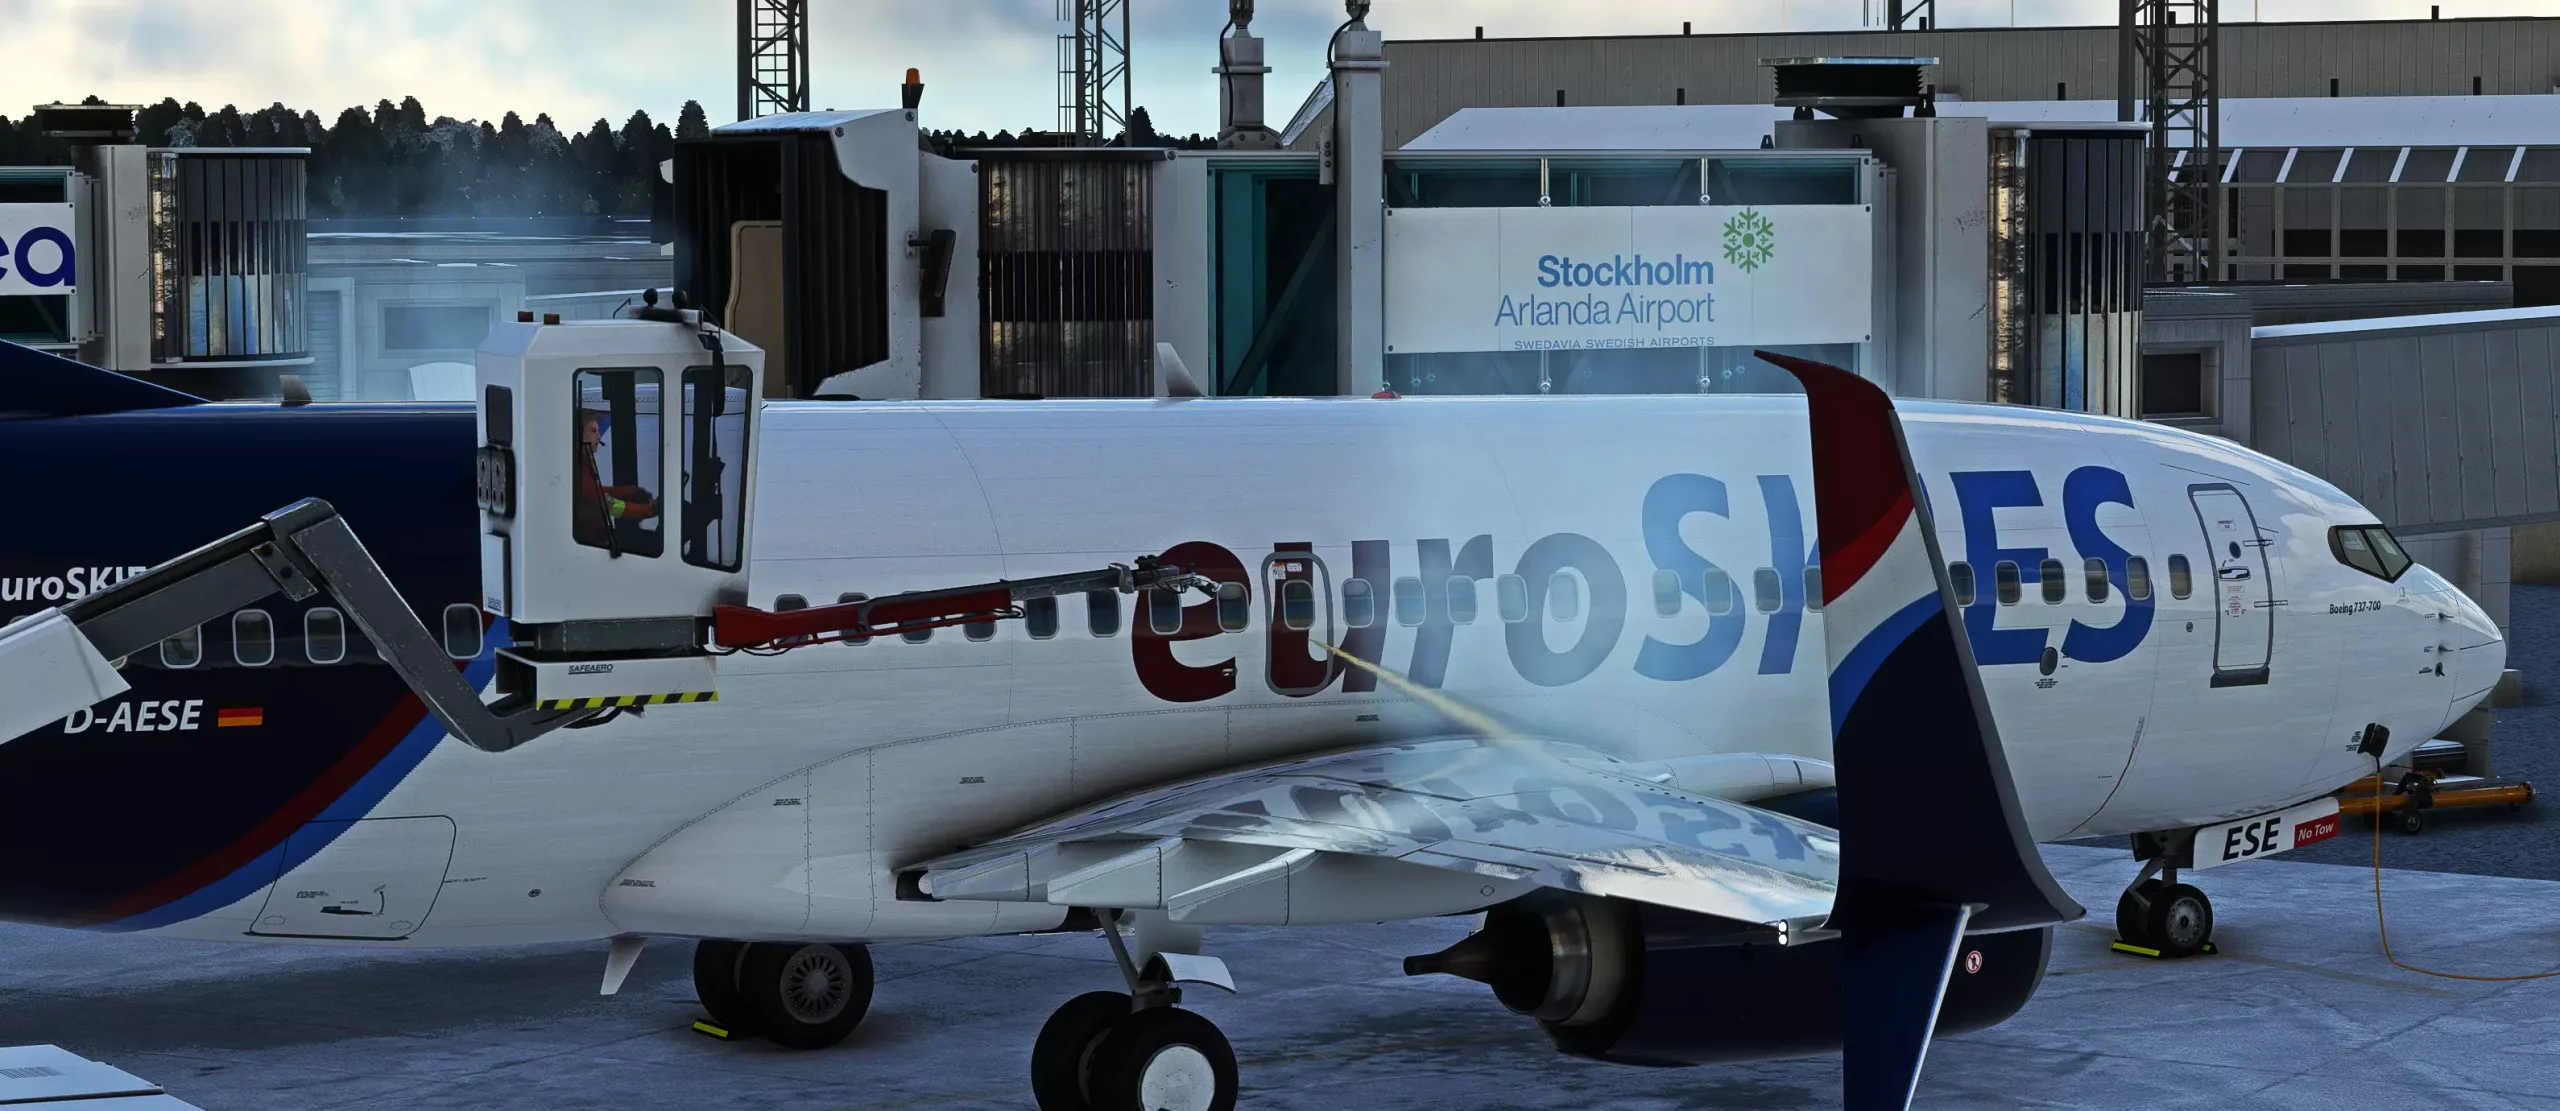 euroSKIES virtual Airline 737 während der Enteisung